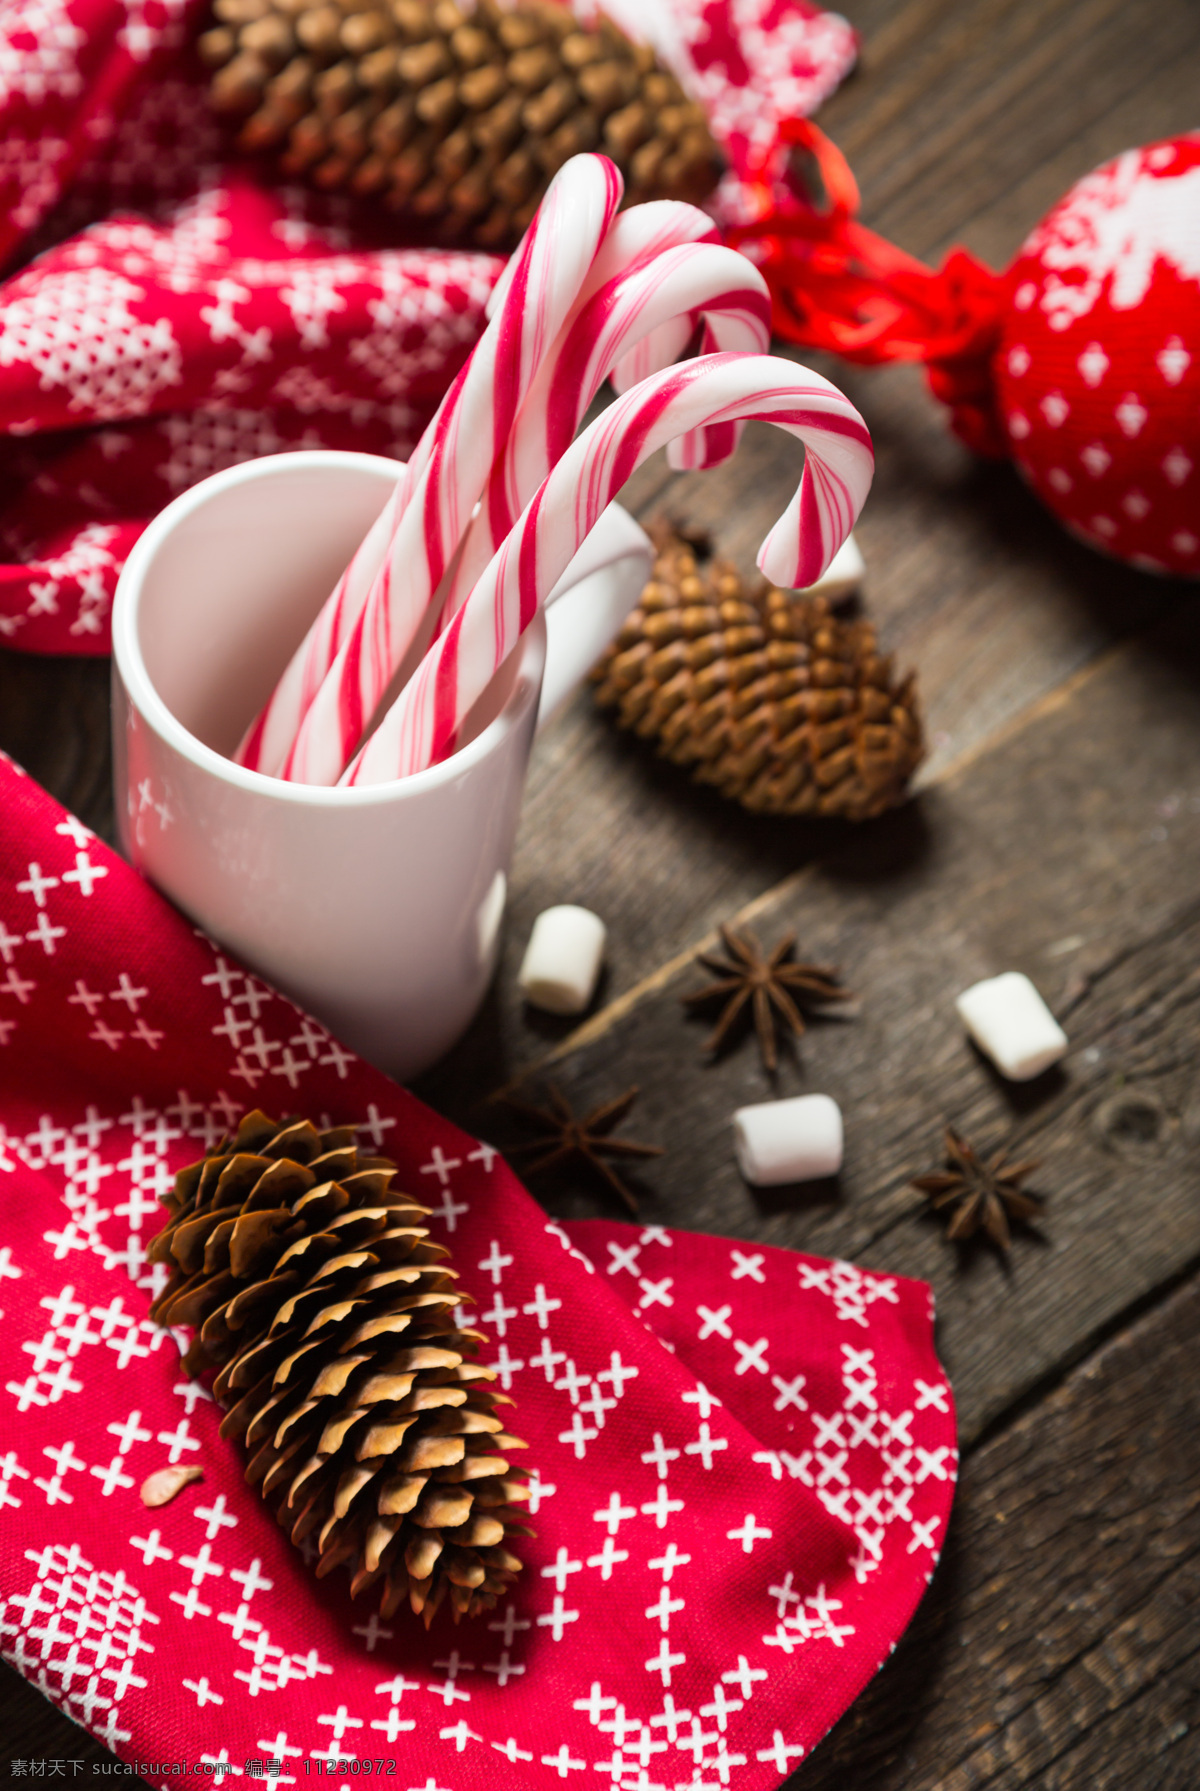 圣诞节 圣诞节咖啡 圣诞节气氛 圣诞节松塔 松塔 咖啡 咖啡糖 圣诞节拐杖 圣诞节素材 一杯咖啡 咖啡里的糖块 糖块 红色